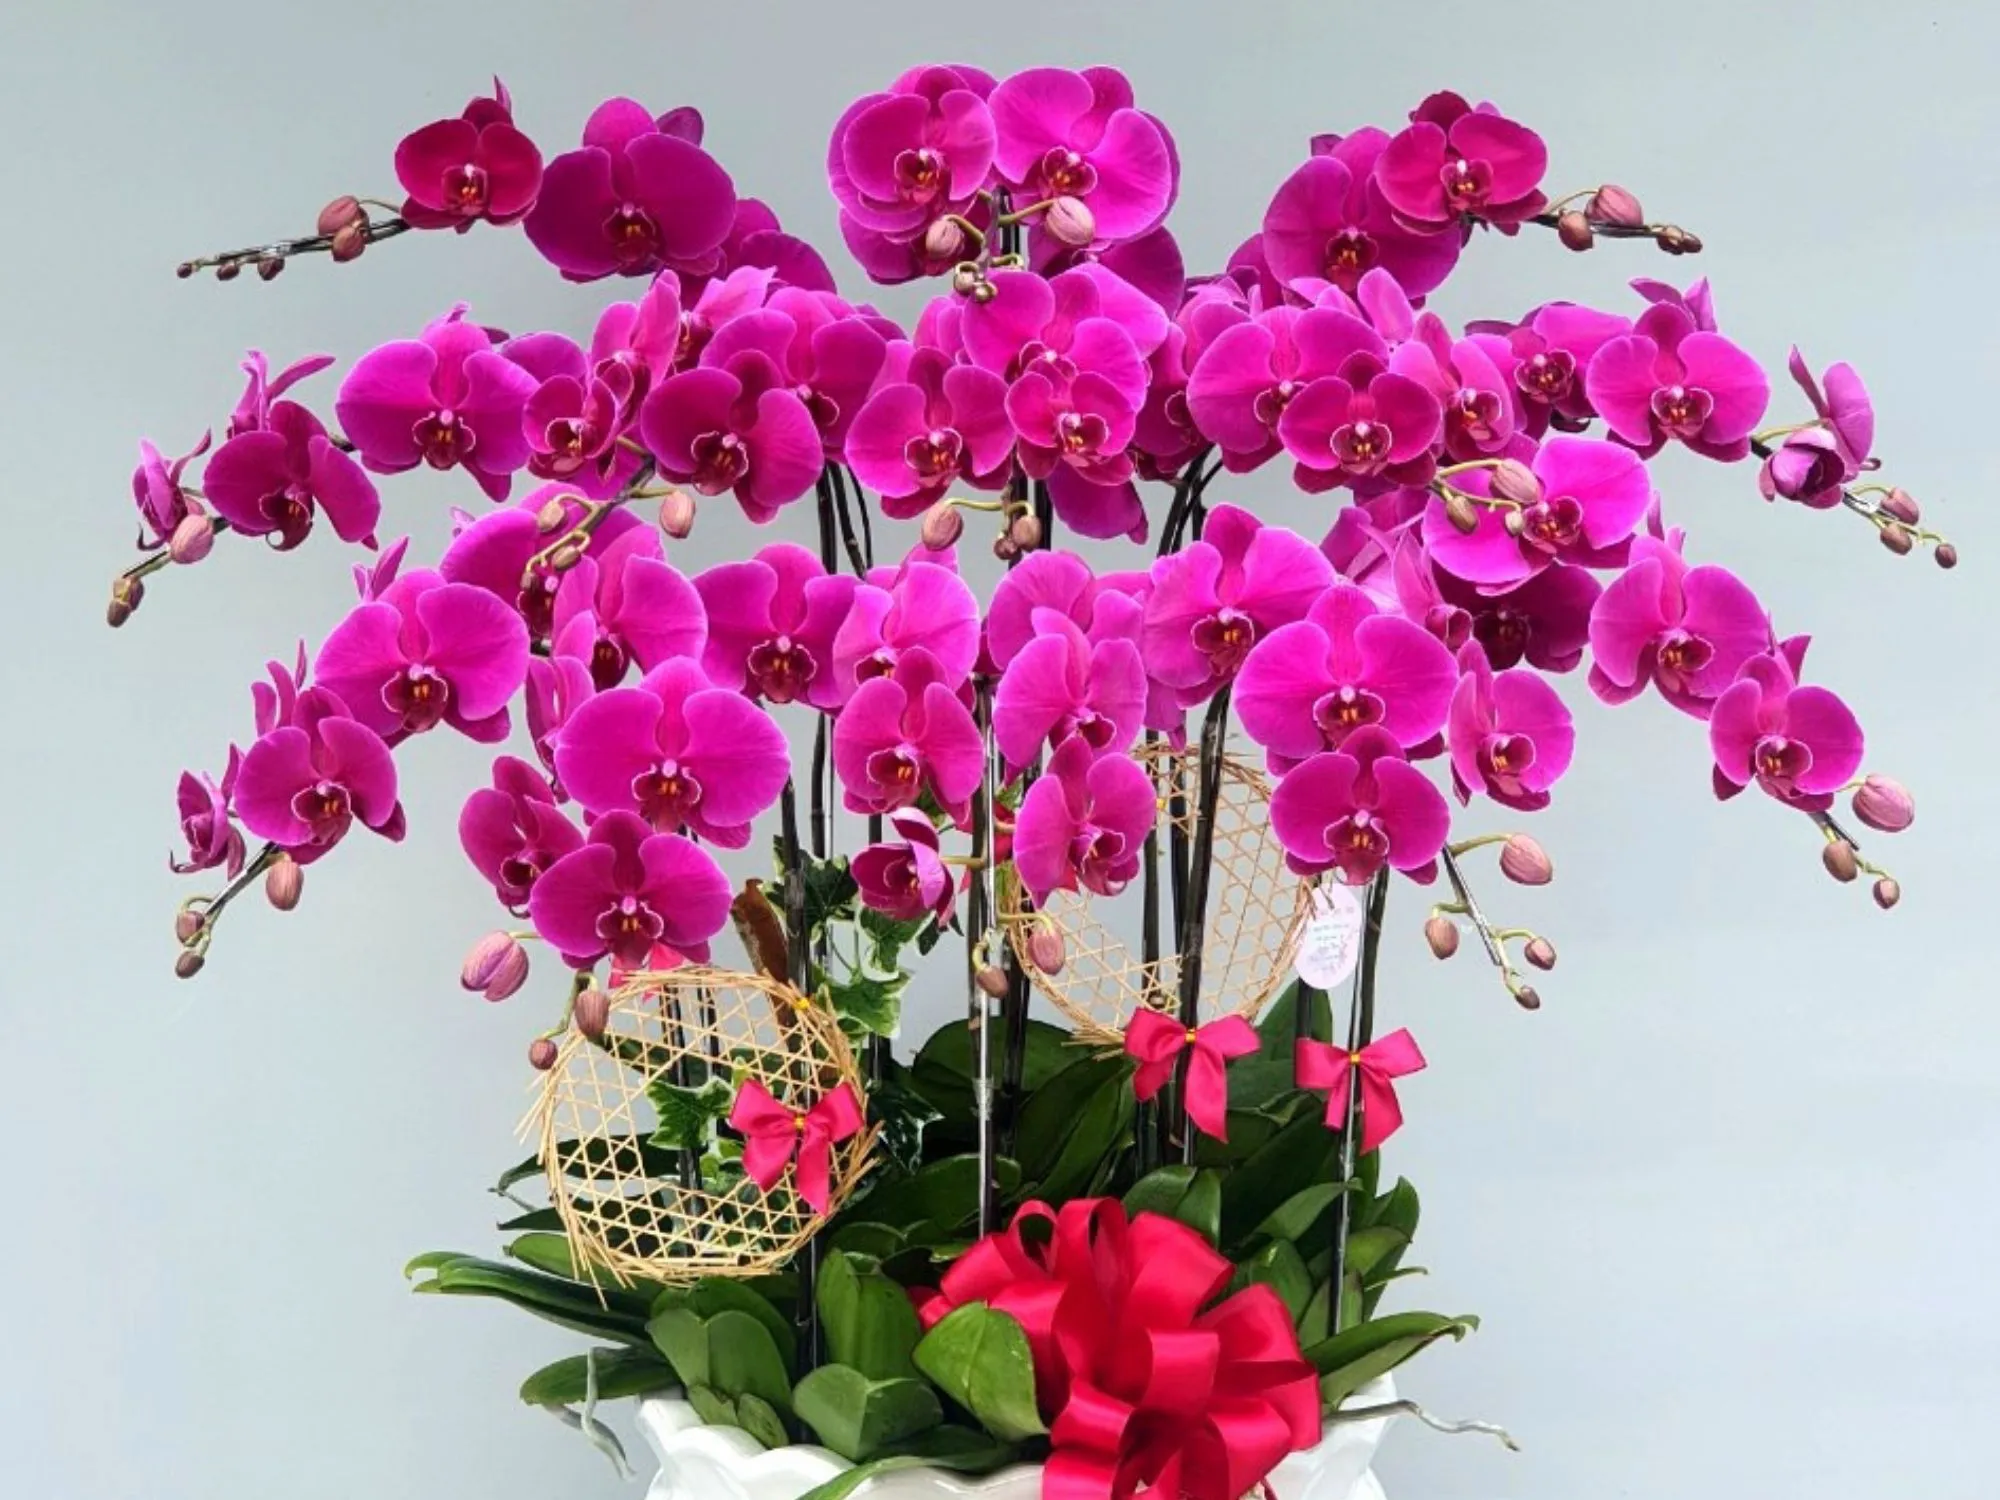 Gợi ý những mẫu hoa tặng mẹ ý nghĩa nhất - Shop hoa tươi Thái Bình